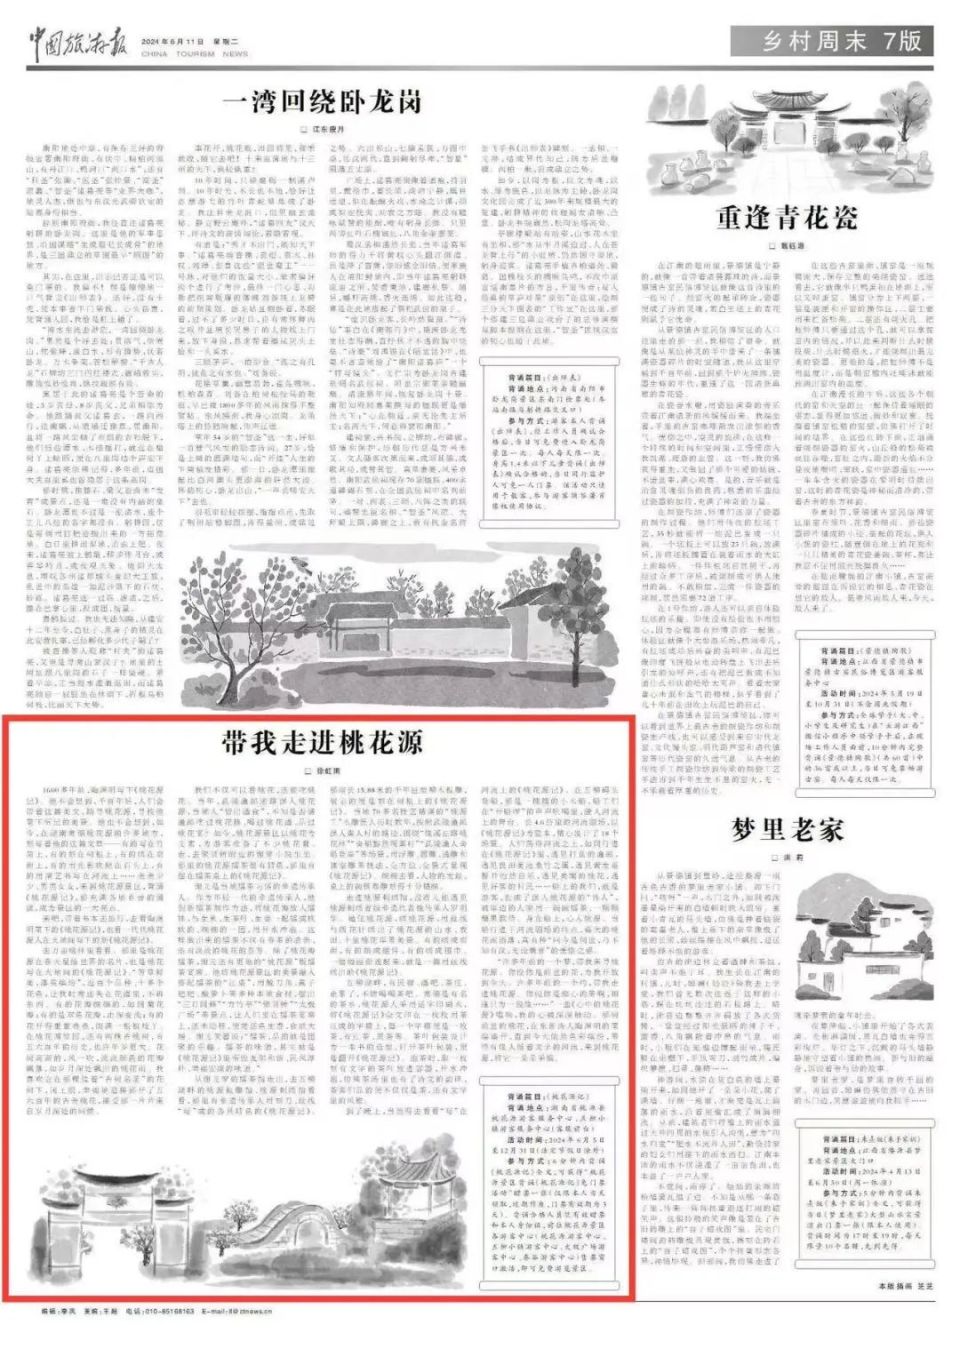 《中国旅游报》推介!课本里的世外桃源真的变现了